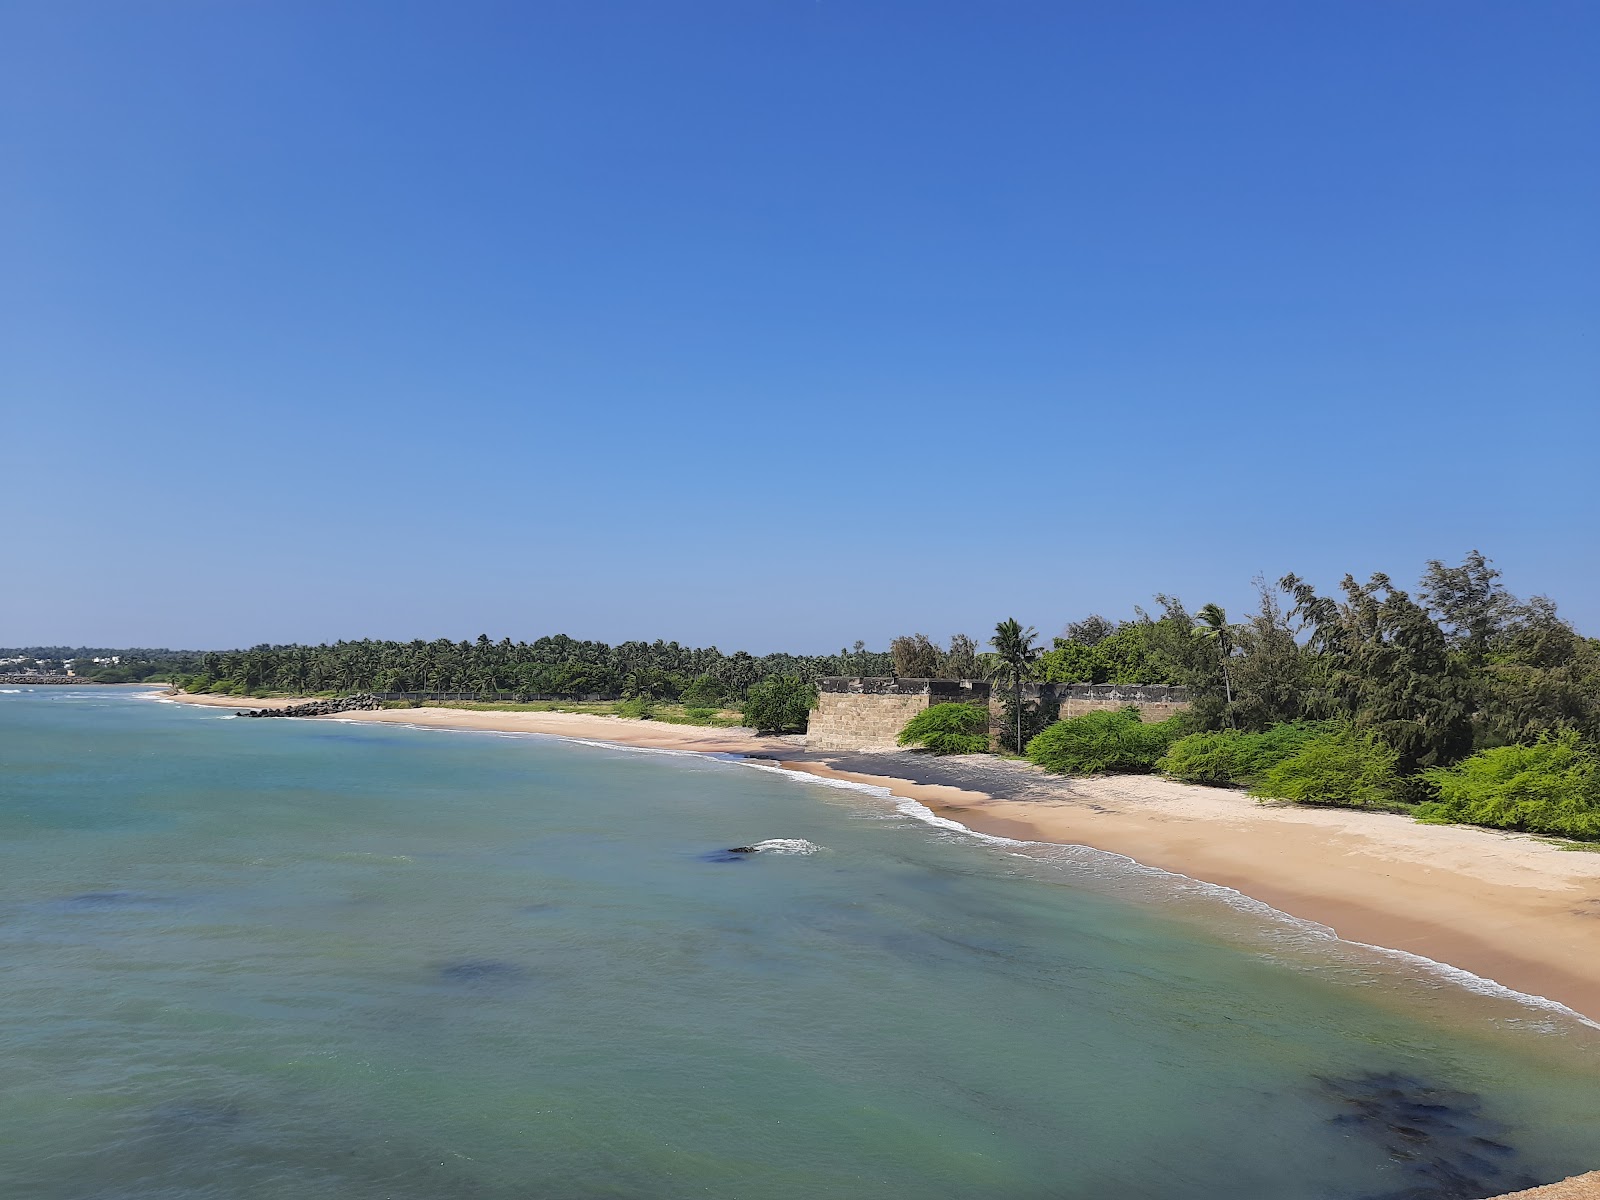 Foto de Vattakottai Beach con playa recta